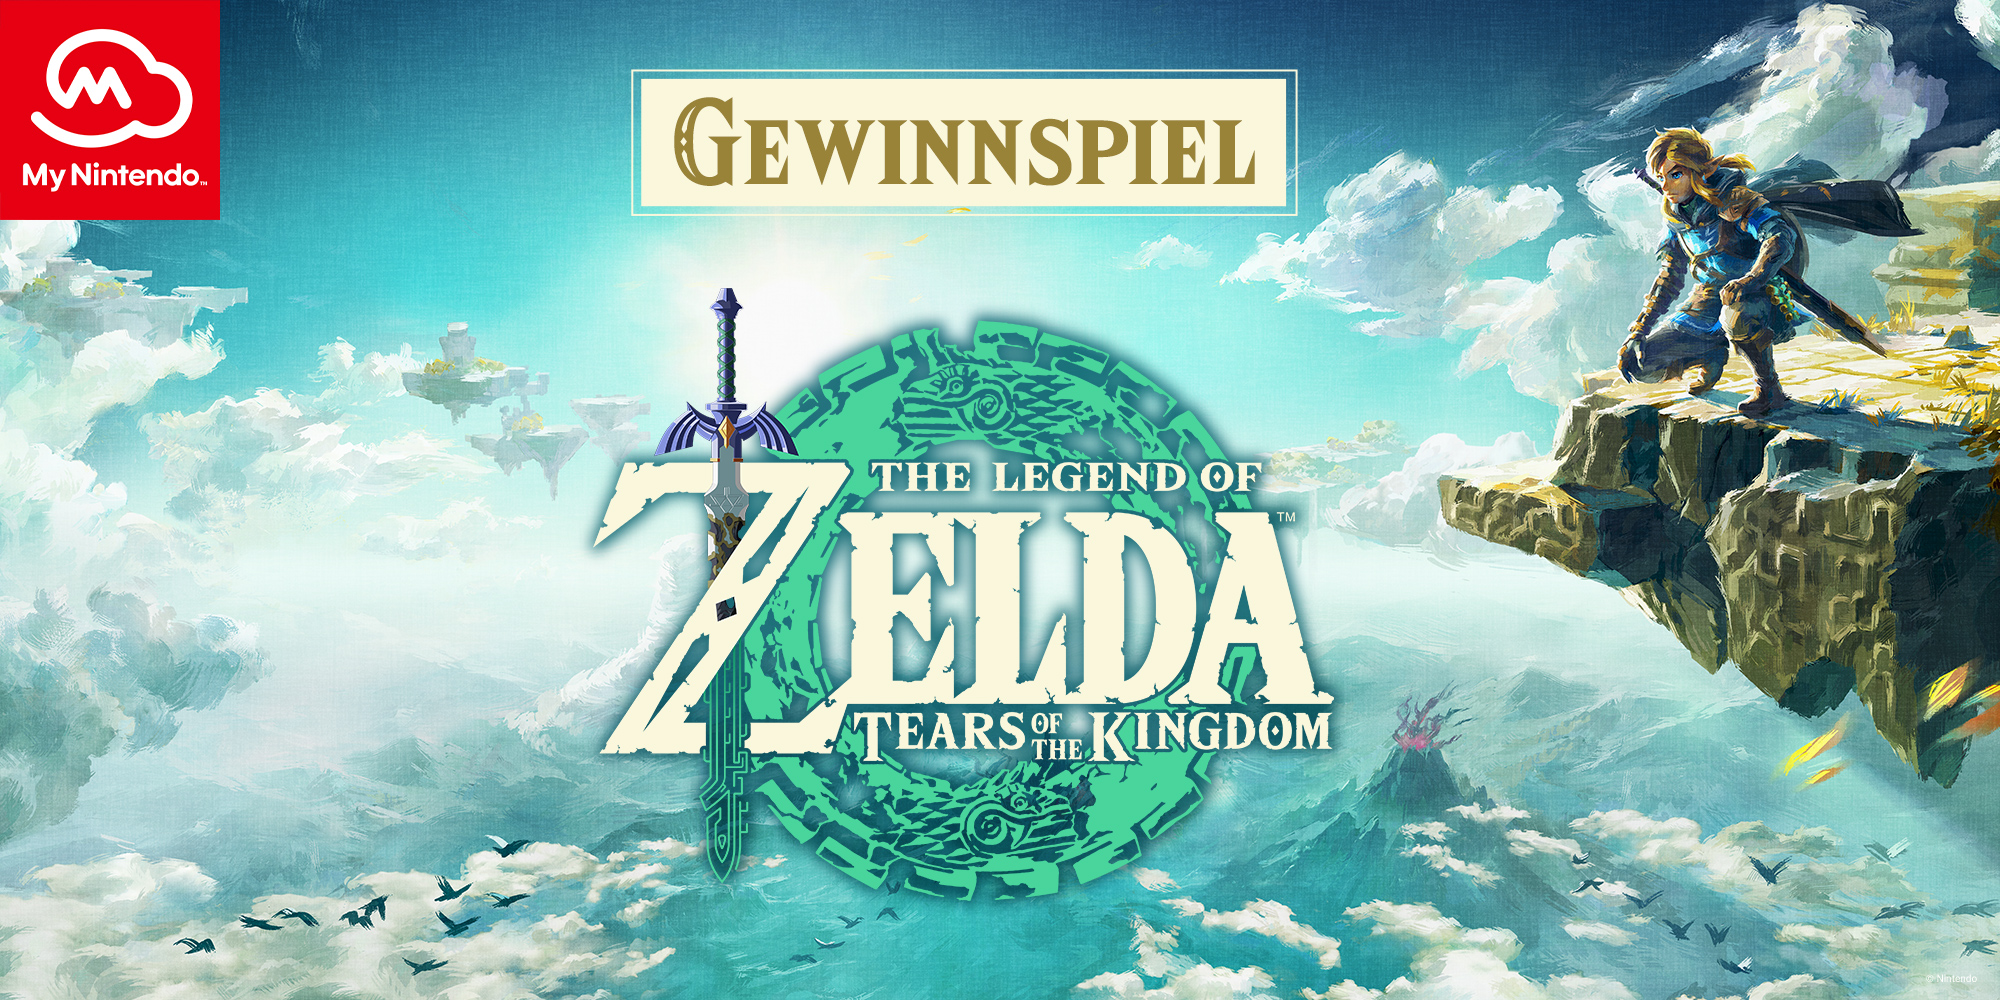 Erhalte die Chance auf ein Fan-Paket im My Nintendo-Gewinnspiel zu The Legend of Zelda: Tears of the Kingdom!